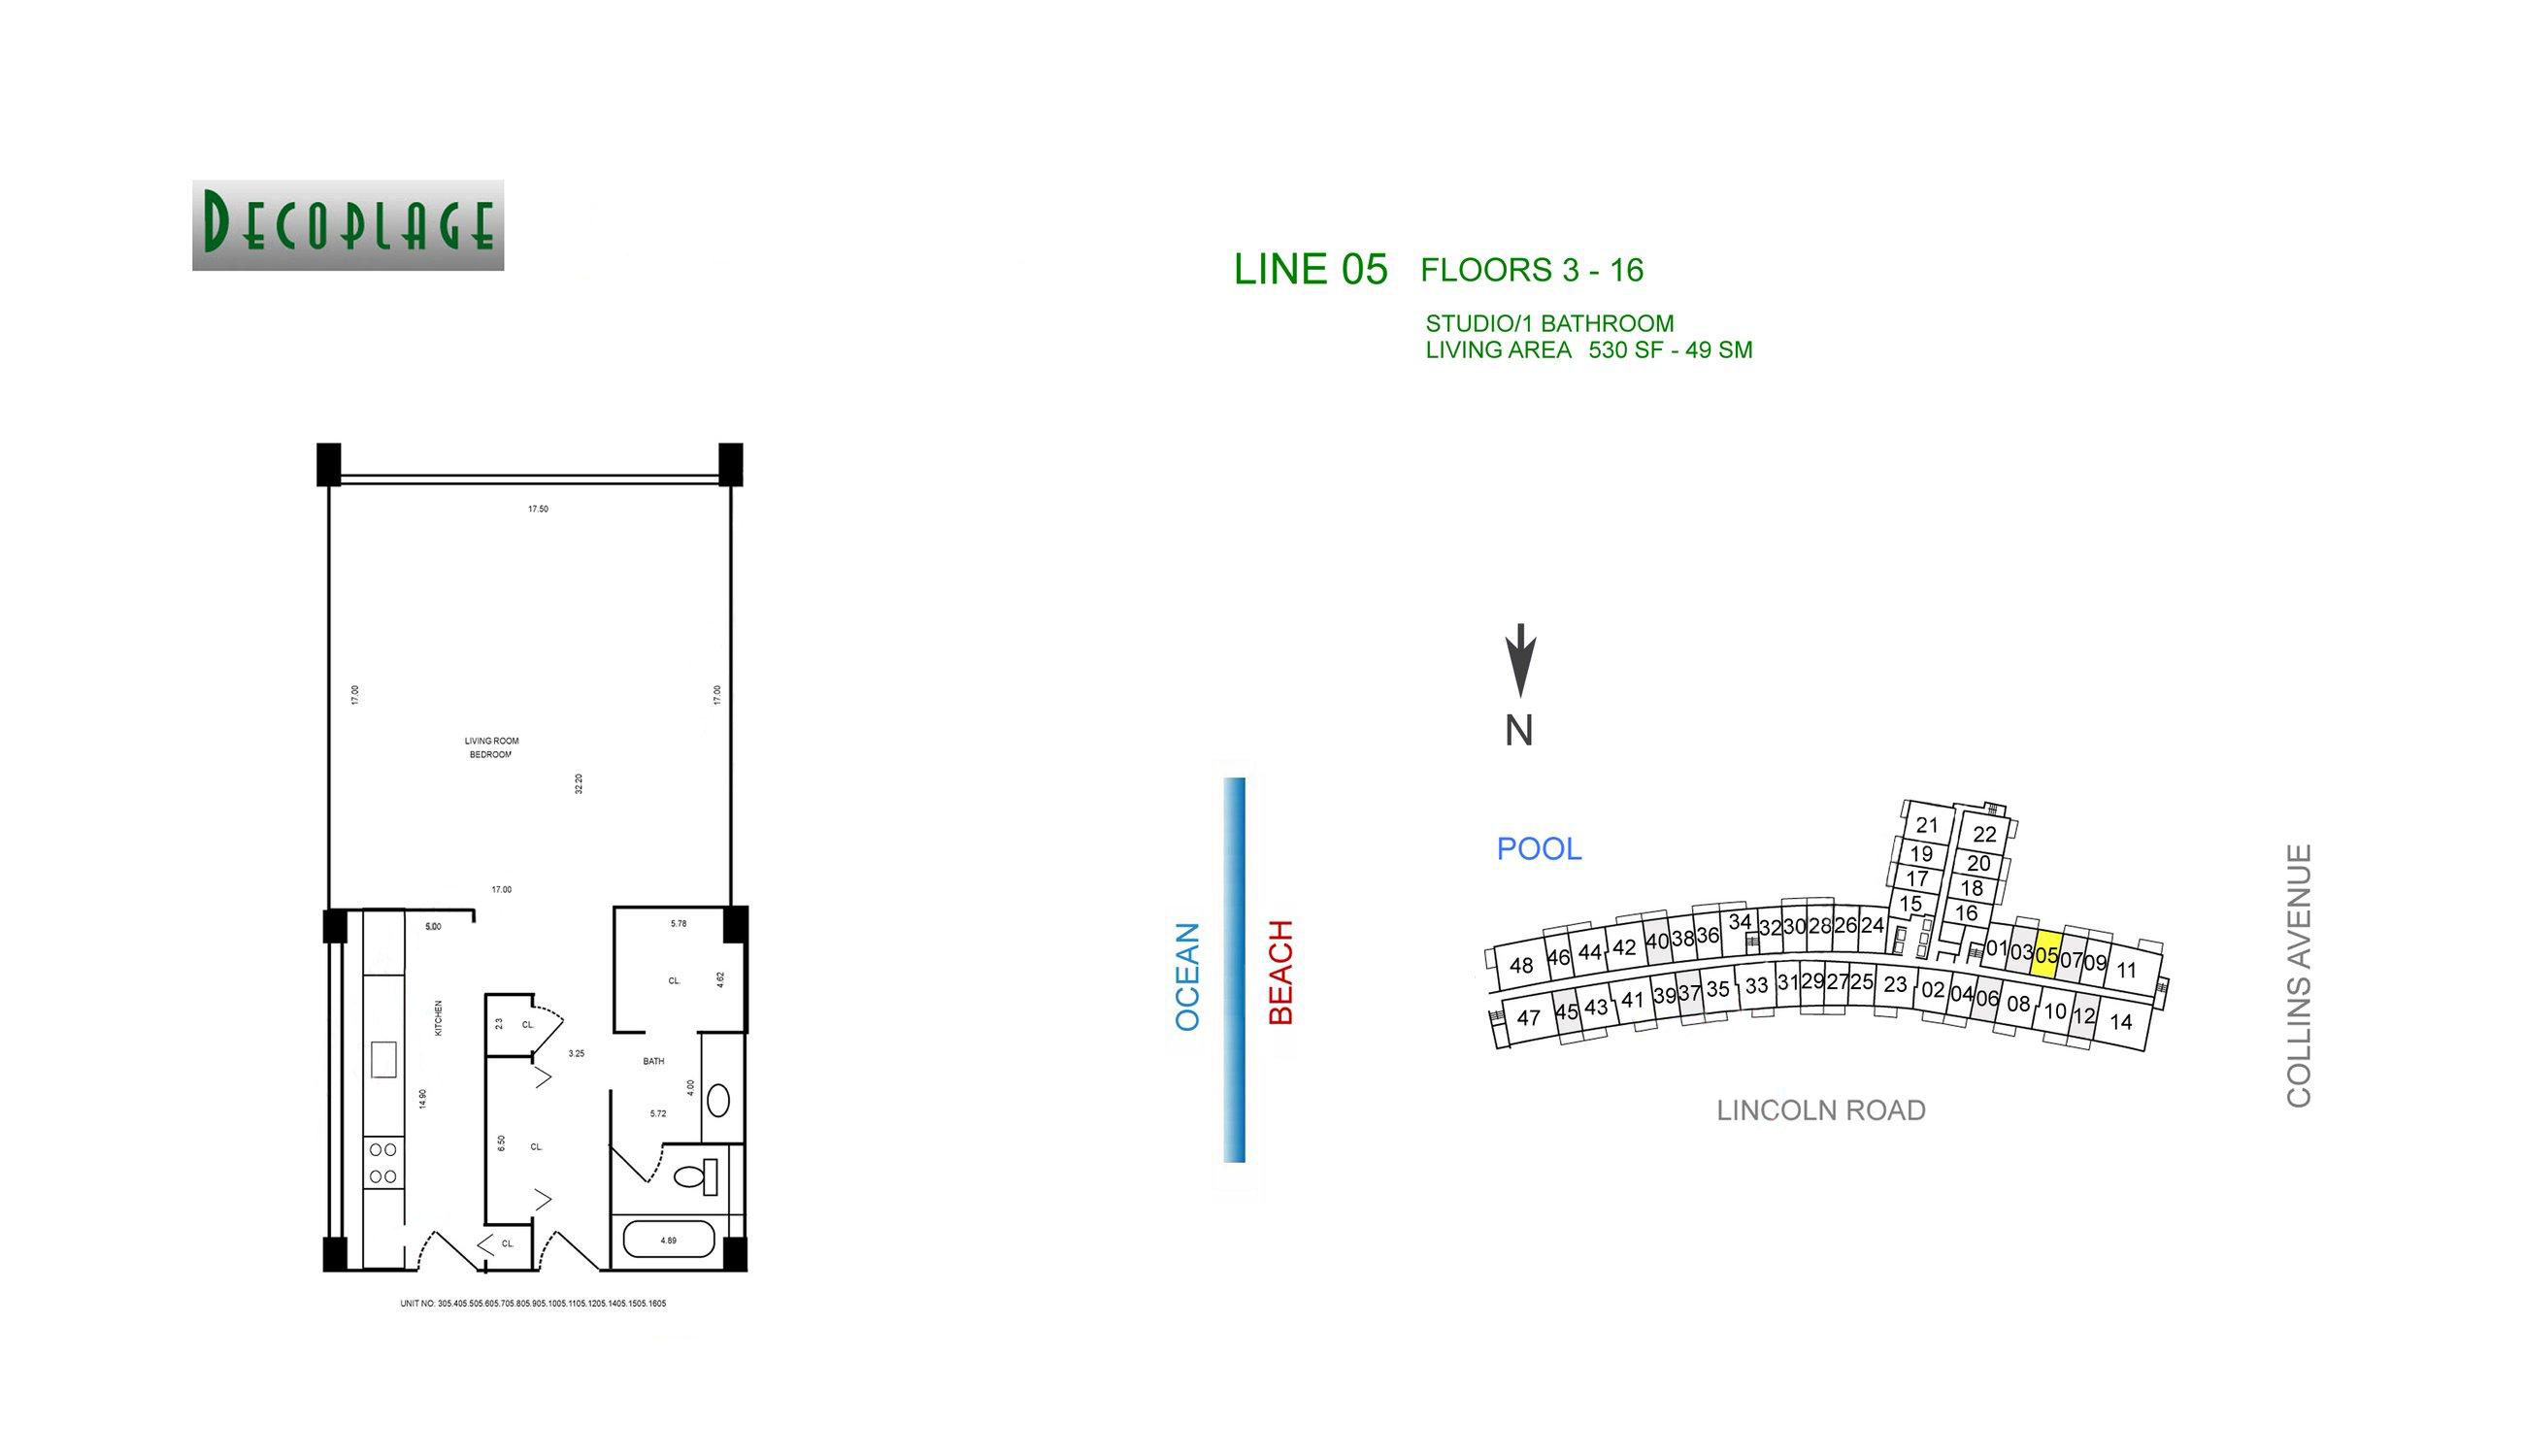 Decoplage Lines 05 Floors 3-16